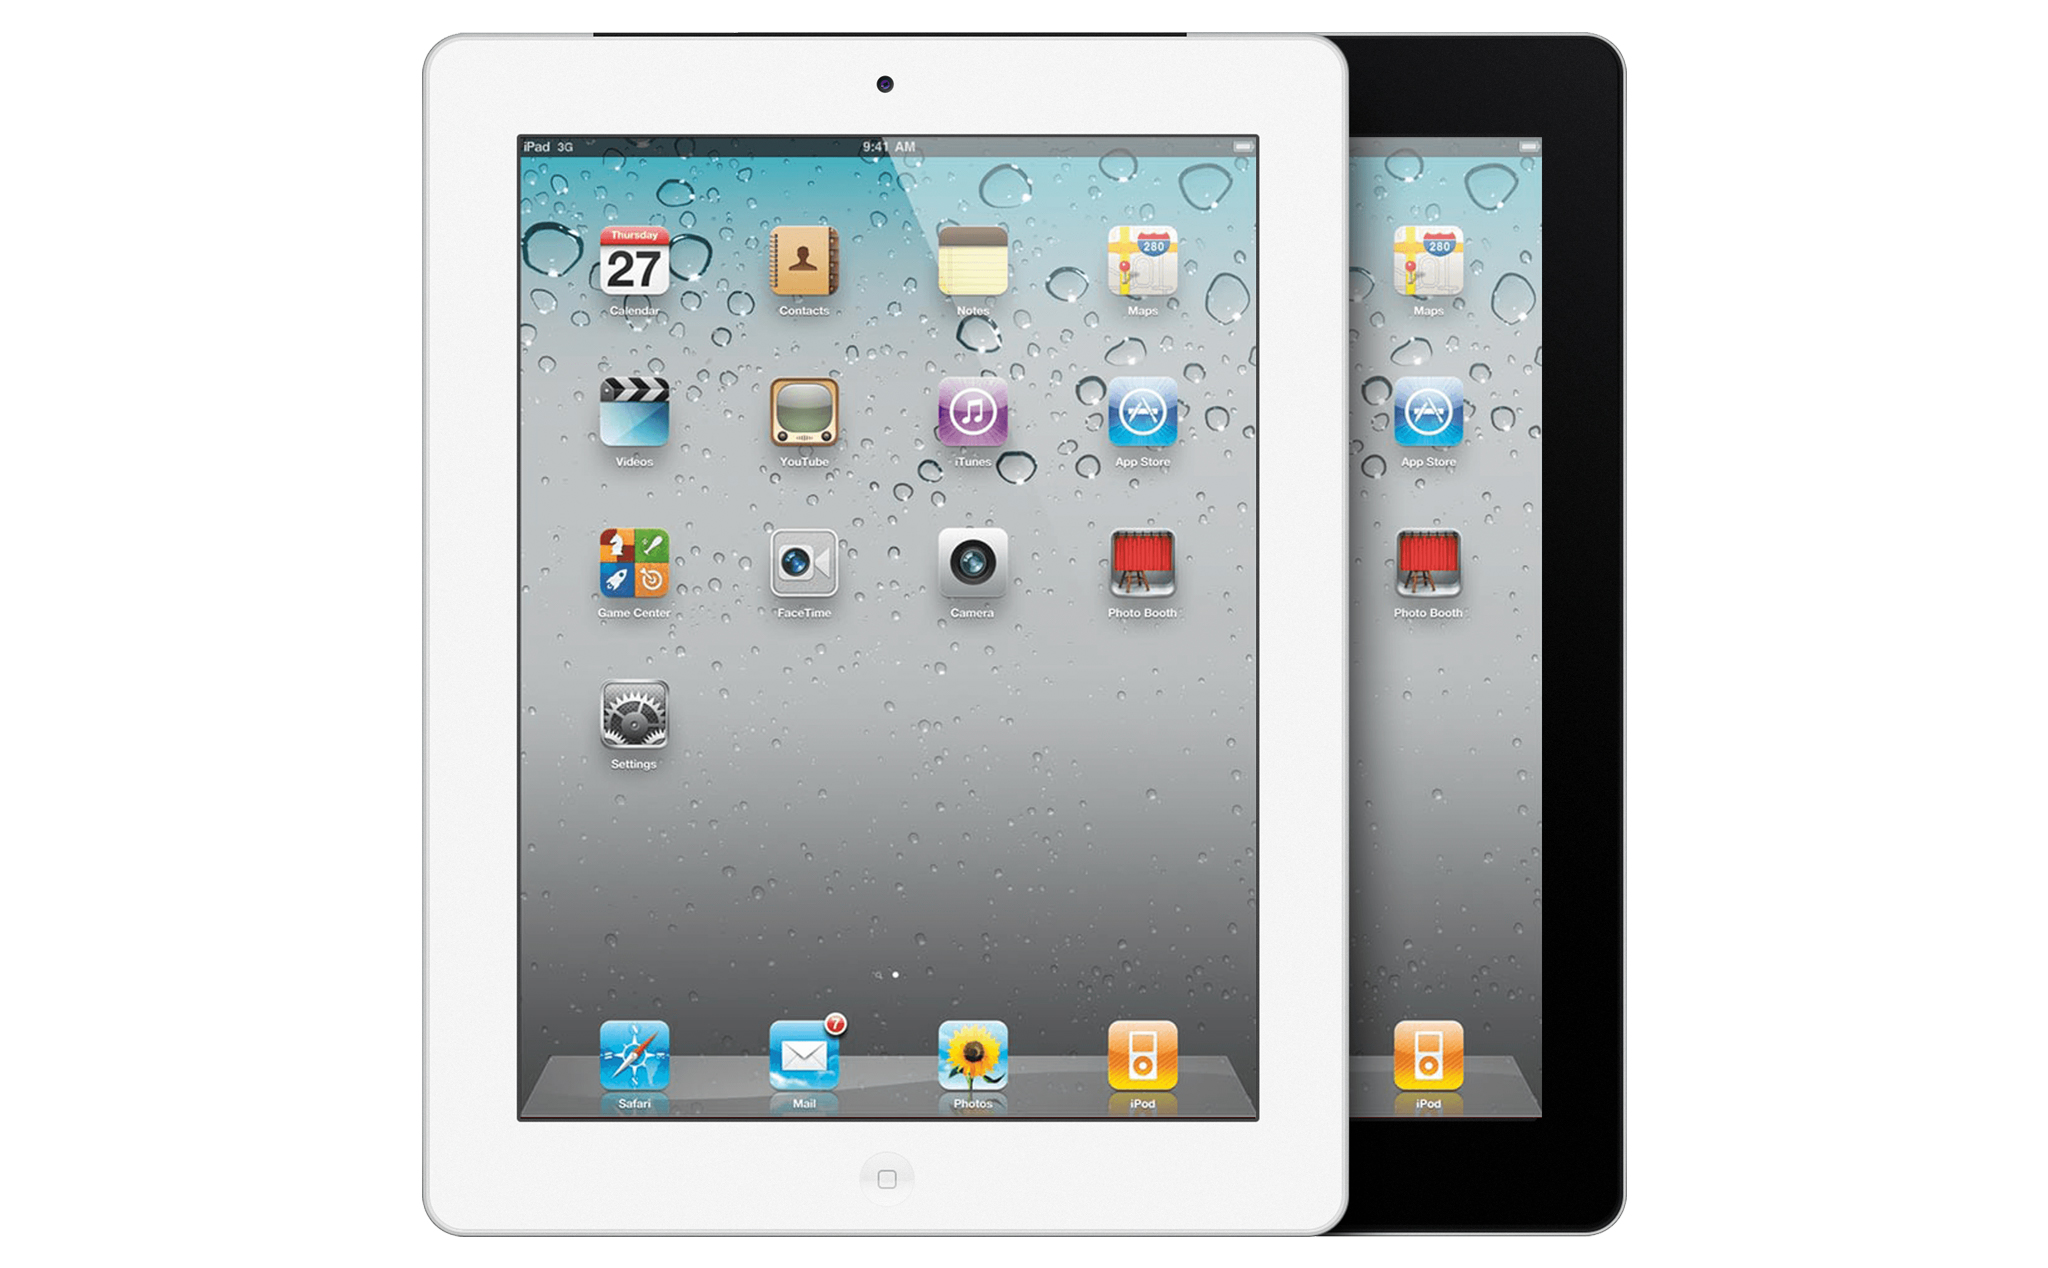 iPad 2 sắp bị đưa vào danh sách thiết bị "lỗi thời" của Apple